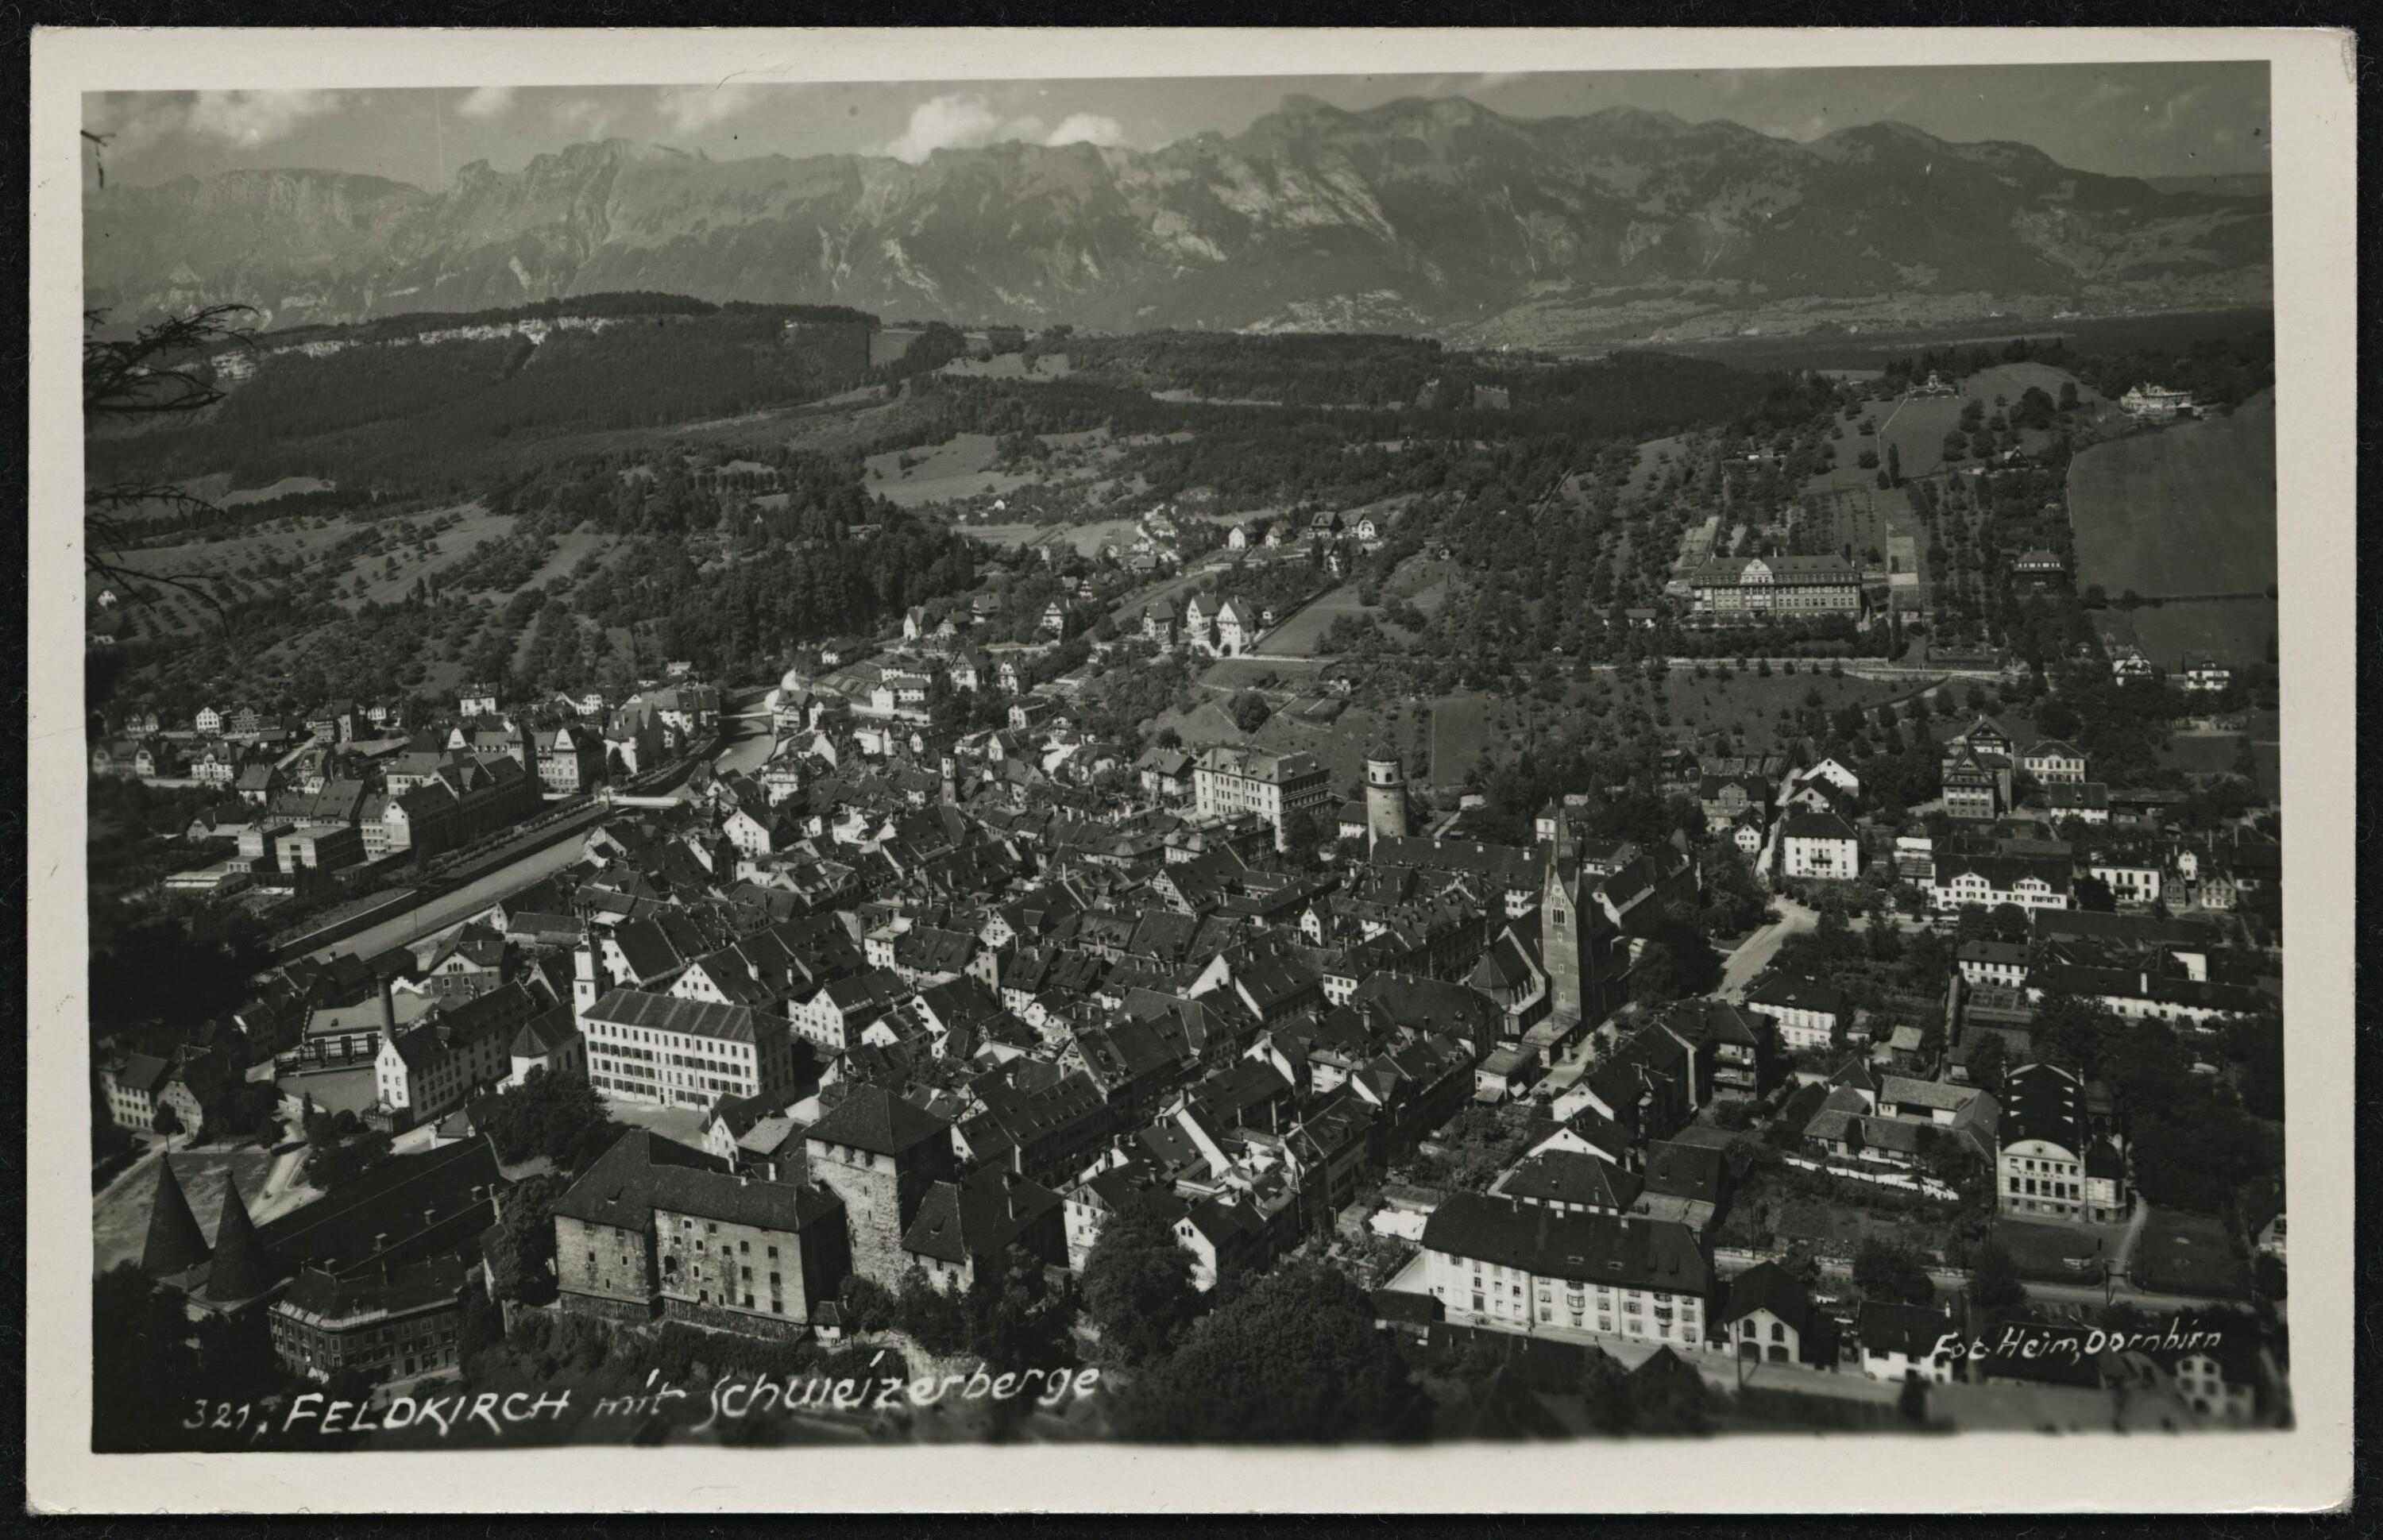 Feldkirch mit Schweizerberge></div>


    <hr>
    <div class=